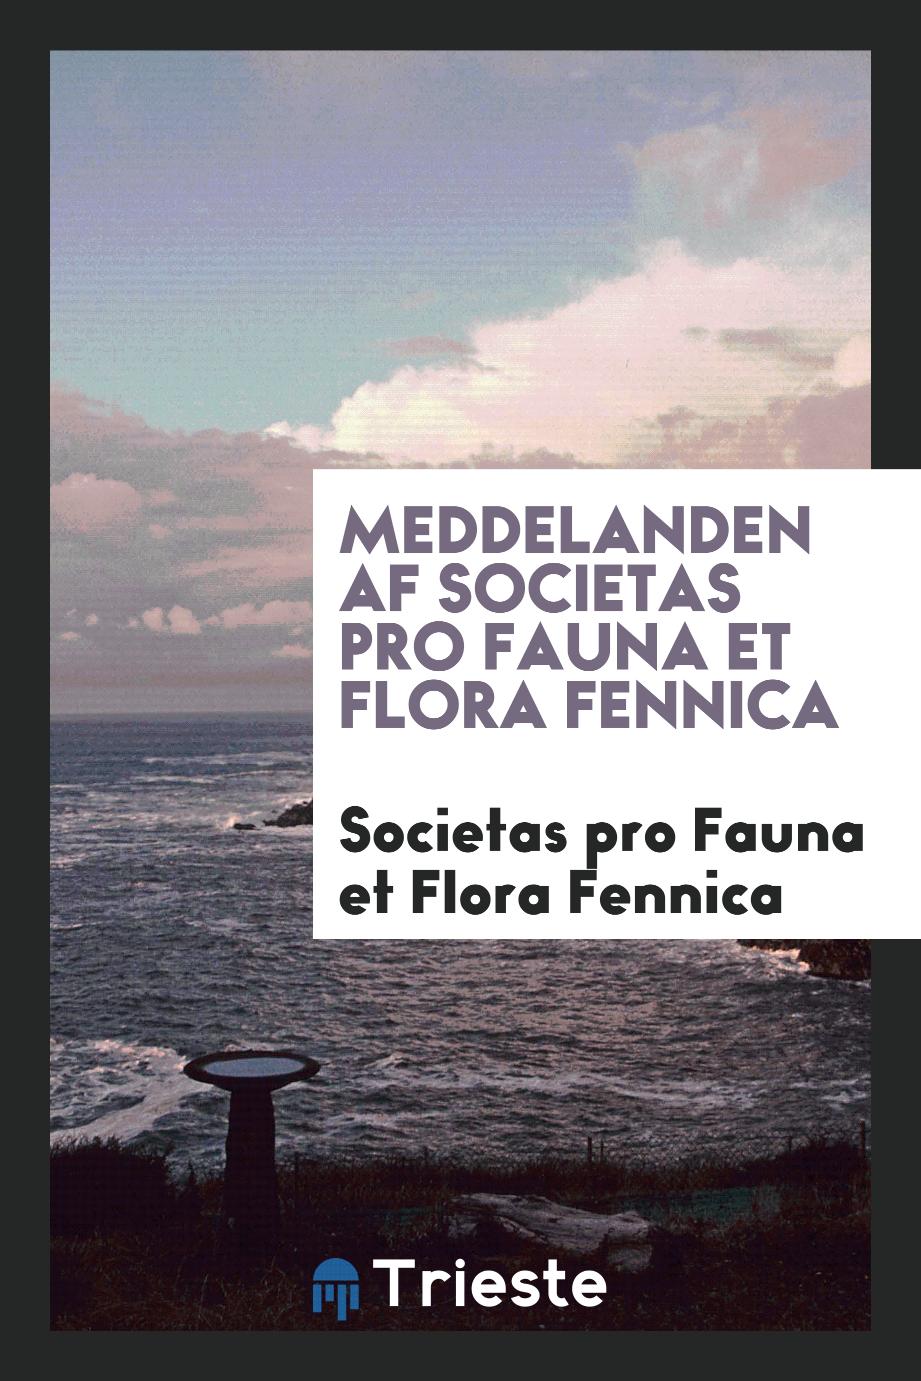 Meddelanden af Societas pro Fauna et Flora Fennica